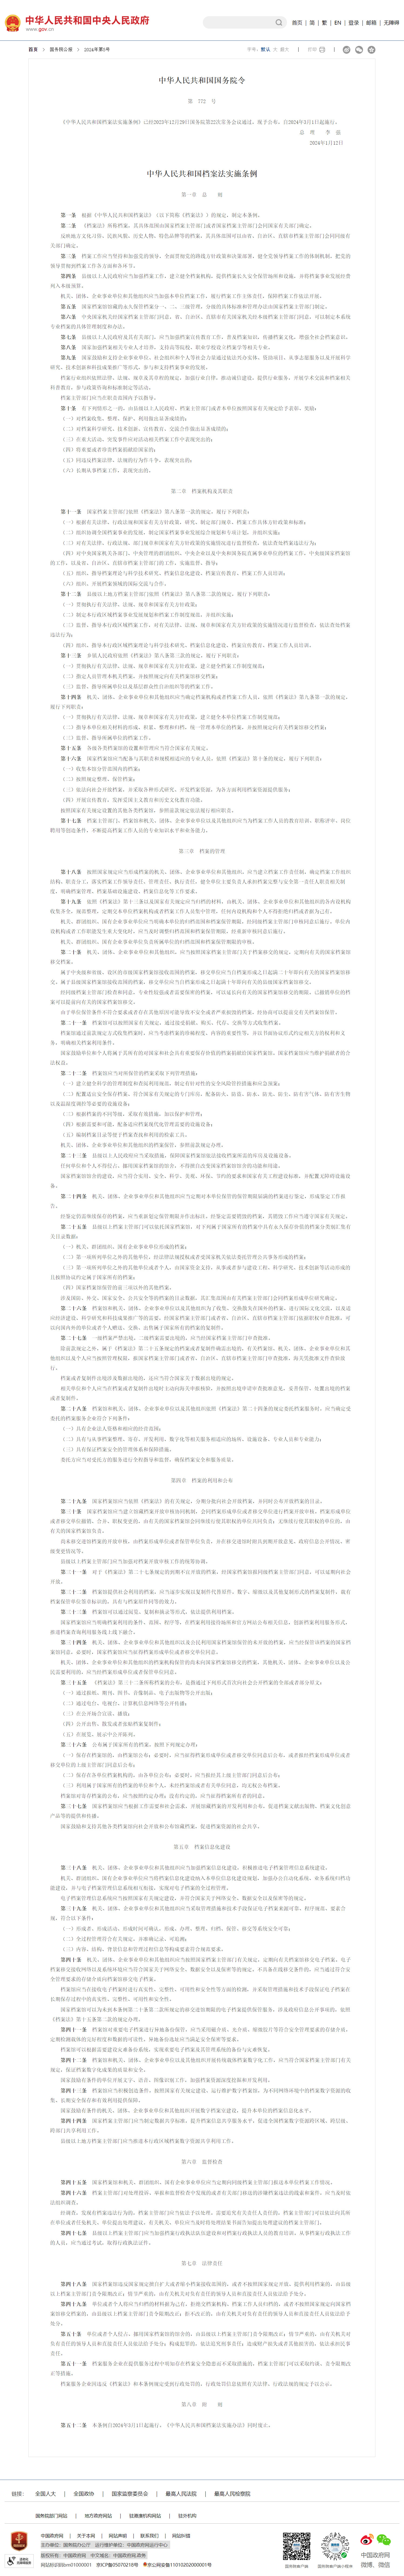 中华人民共和国档案法实施条例（来源：中国政府网）.jpg